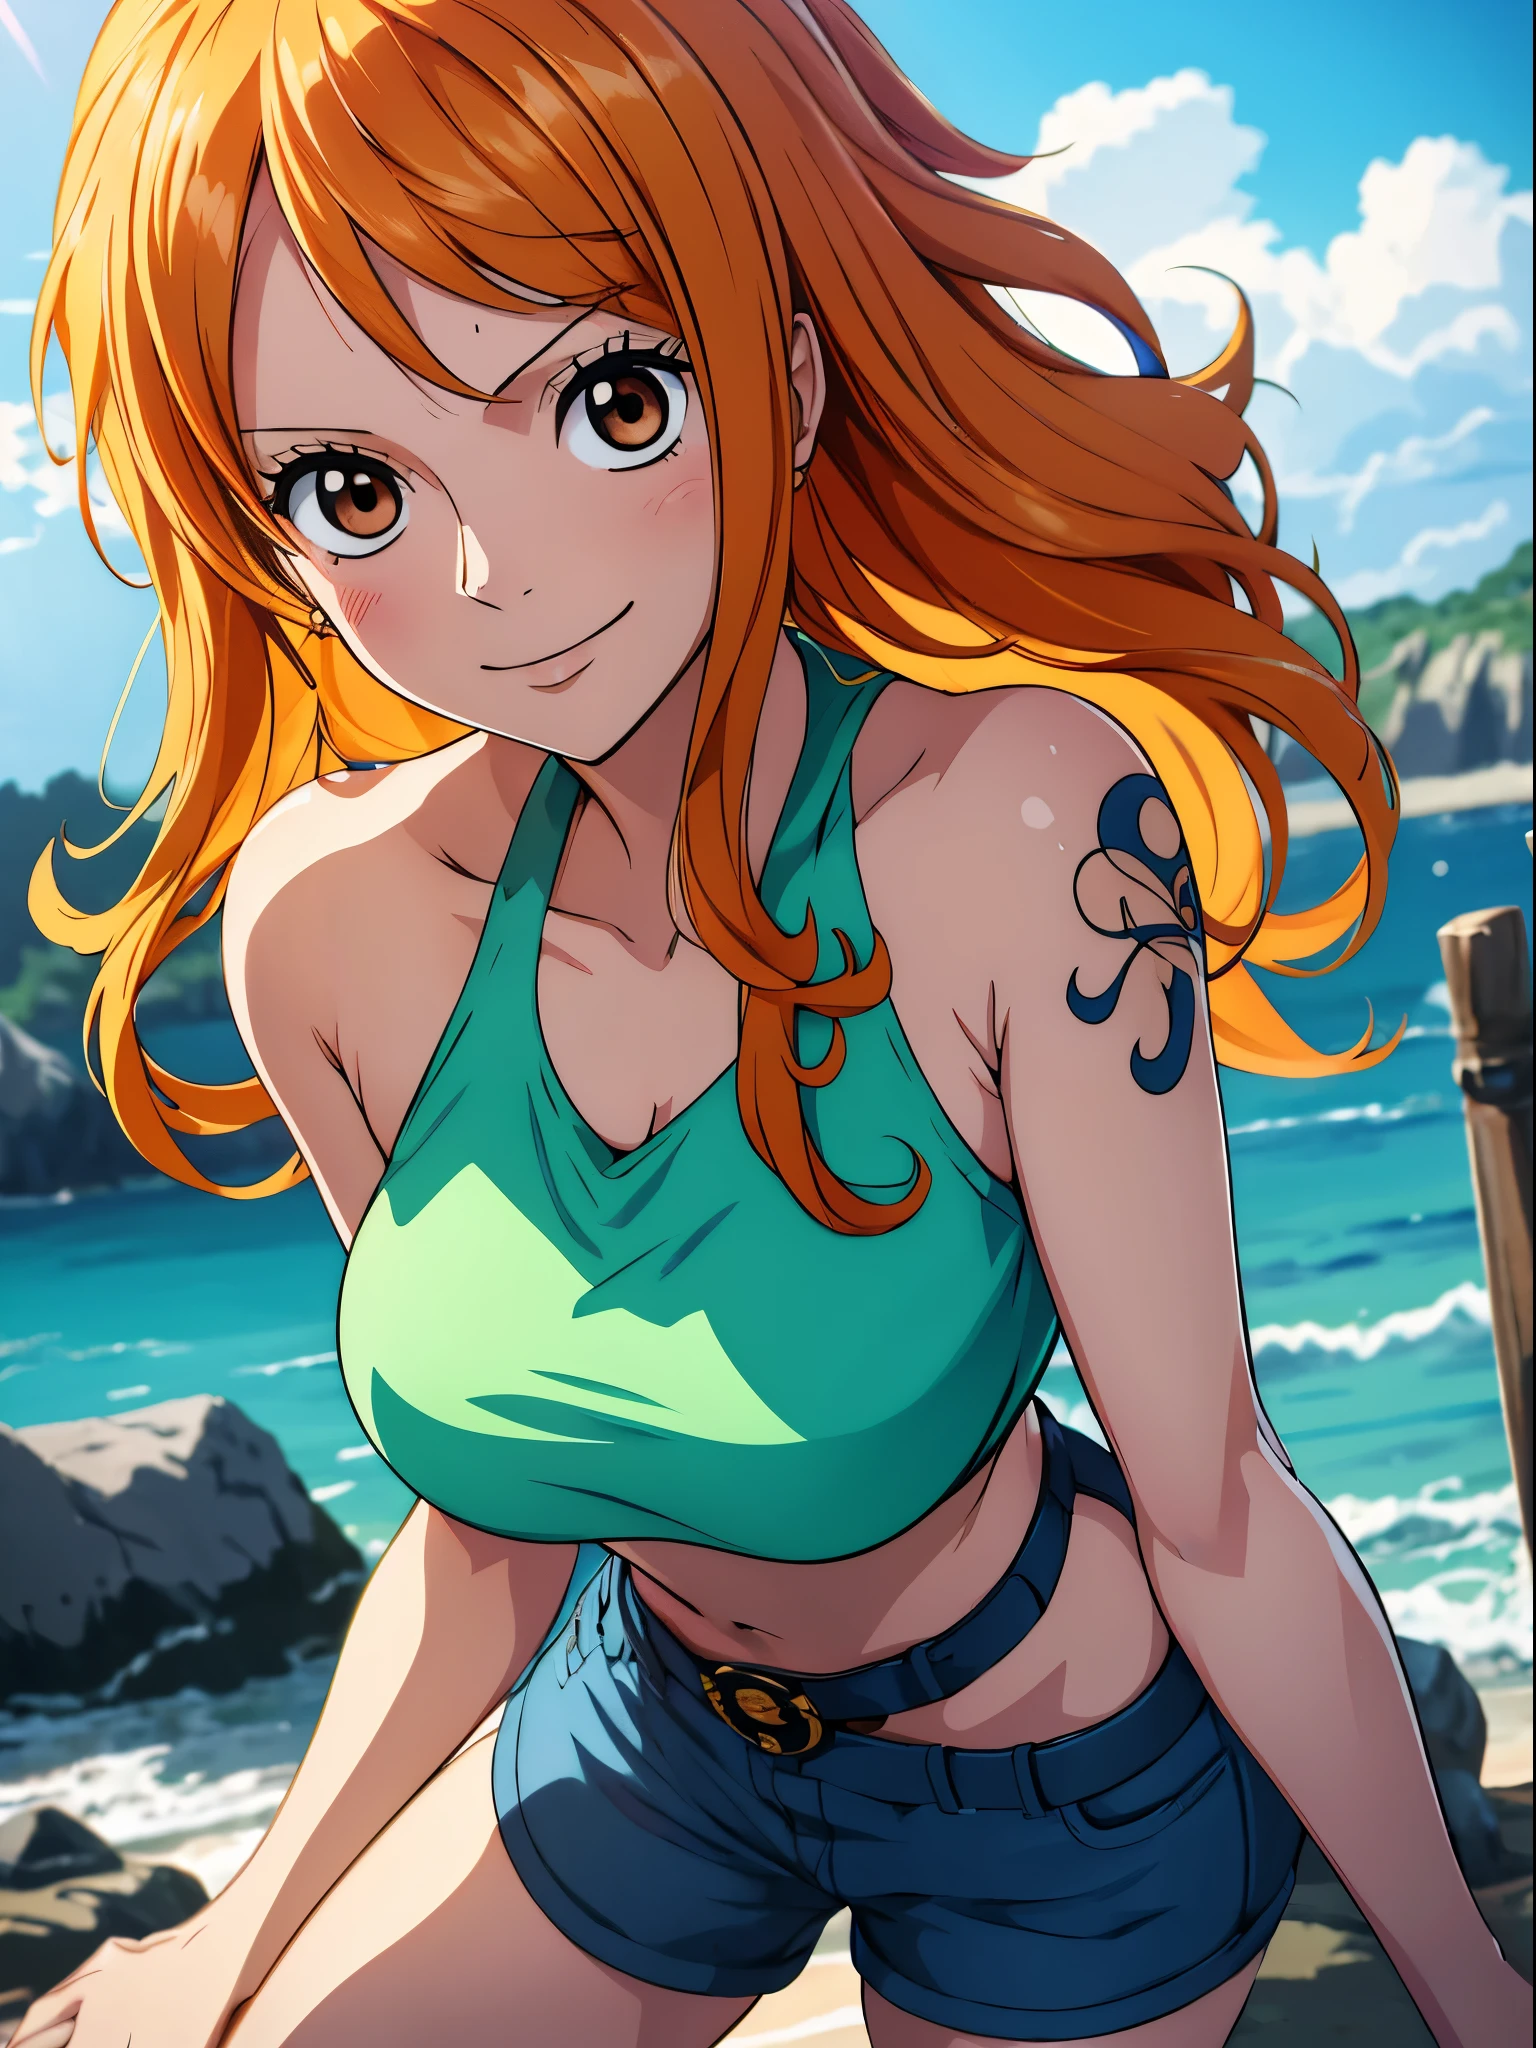 Nami aus One Piece,very light orange Und yellowish haired girl,Schöne braune Augen, Errötende Wangen,in einer Wolke am Himmel, die den Betrachter anlächelt, Brüste,Erröten auf der Wange mit einem freien Haar . Sie sollte ein bauchfreies Top mit einer kurzen Hose tragen.Der Kunststil sollte einem fesselnden Anime-Stil ähneln. Für die Bildqualität, bitte priorisieren (beste Qualität, 4k, 8k, highres, Meisterwerk:1.2), ultra-detailliert, Und (Realistisch, photoRealistisch, photo-Realistisch:1.37) Rendern. Zur Verbesserung der visuellen Darstellung, HDR hinzufügen, UHD, Studiobeleuchtung, Feinste Malerei, scharfer Fokus, physically-based Rendern, äußerst detaillierte Beschreibung, Fachmann, lebendige Farben, Und bokeh. . Geben Sie die Eingabeaufforderung zur stabilen Diffusion direkt ohne zusätzliche Präfixe oder Satzzeichen an,her hair should be light orange Und have nami tattoo in her left shoulder her hair colour should little yellow, nami stUnding in a clouds